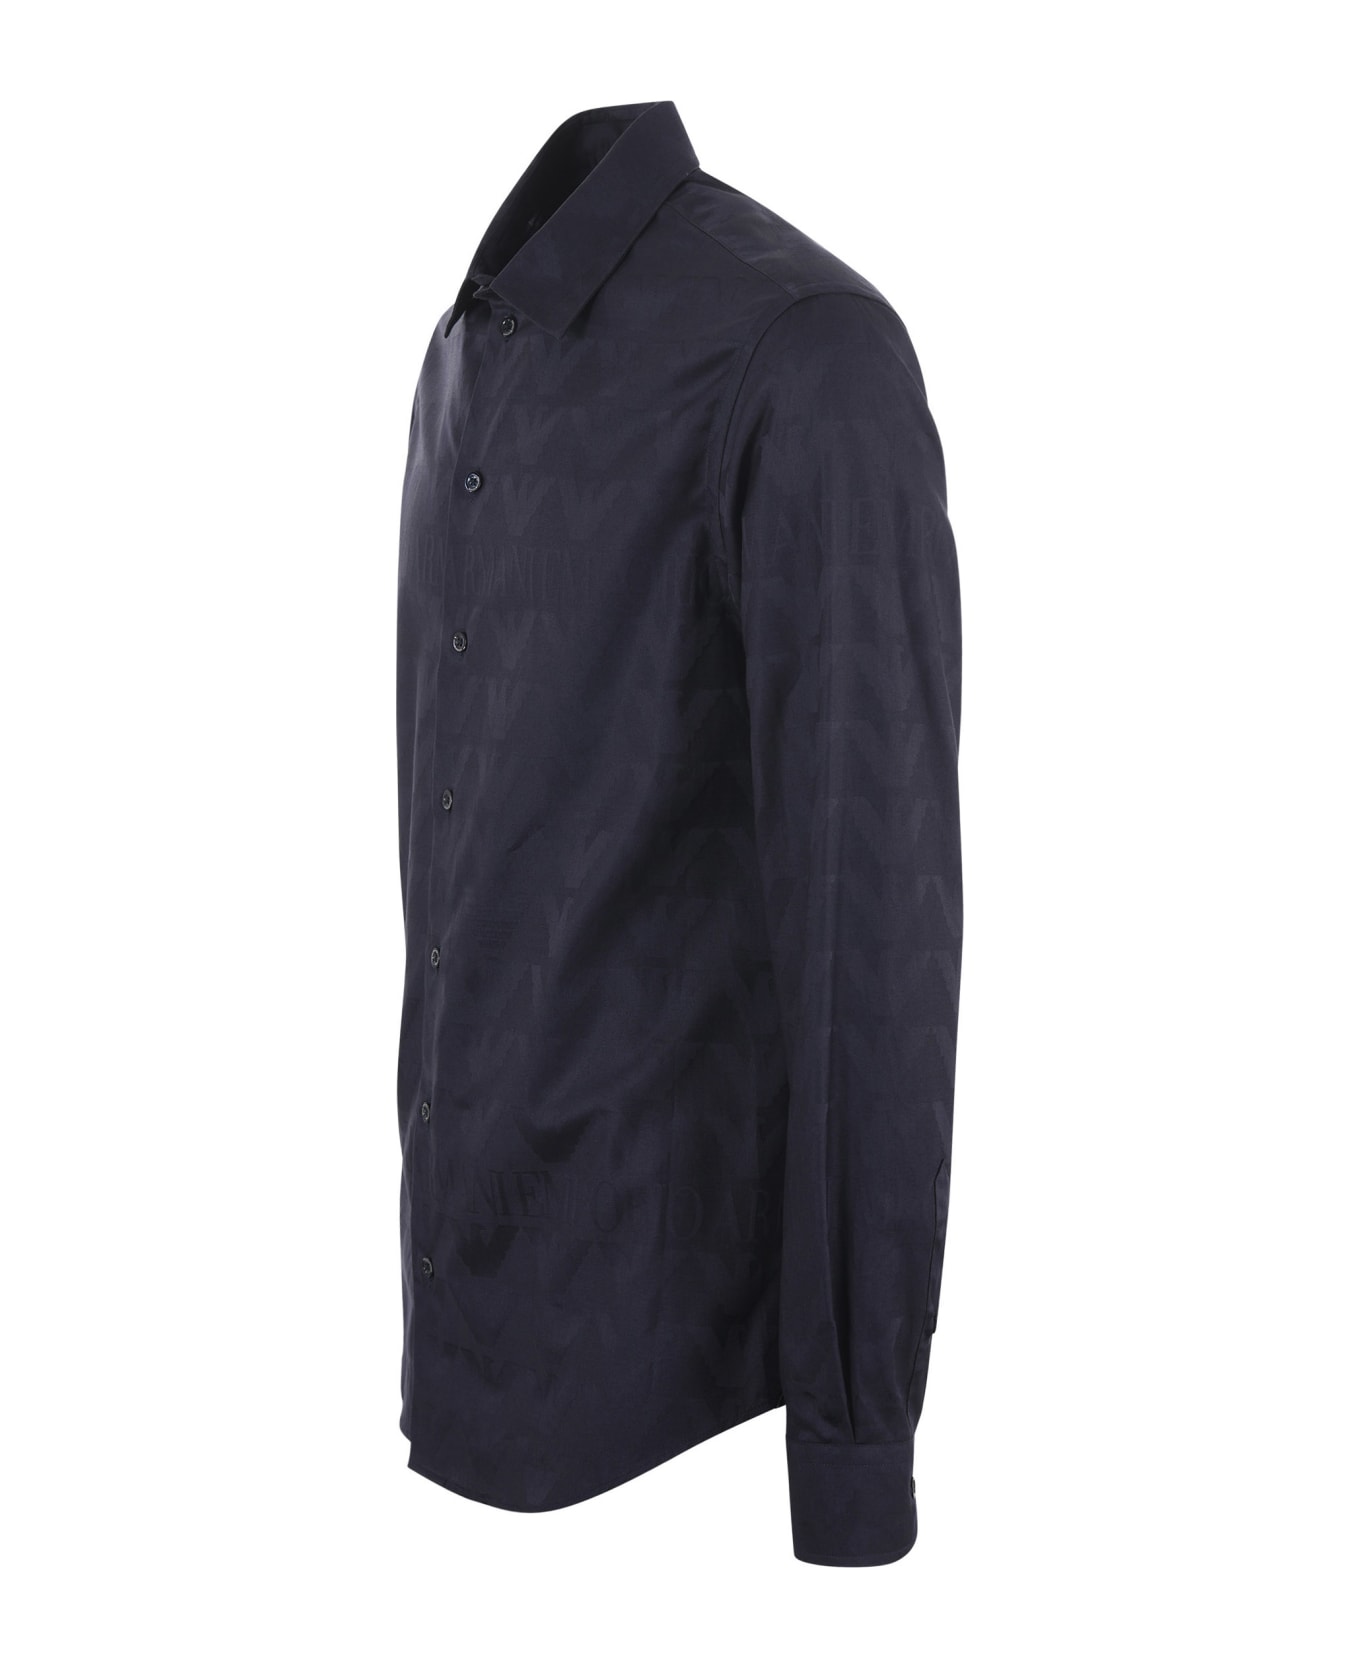 Emporio Armani Camicia Emporio Armani In Cotone Jacquard Disponibile Store Scafati - Blu scuro